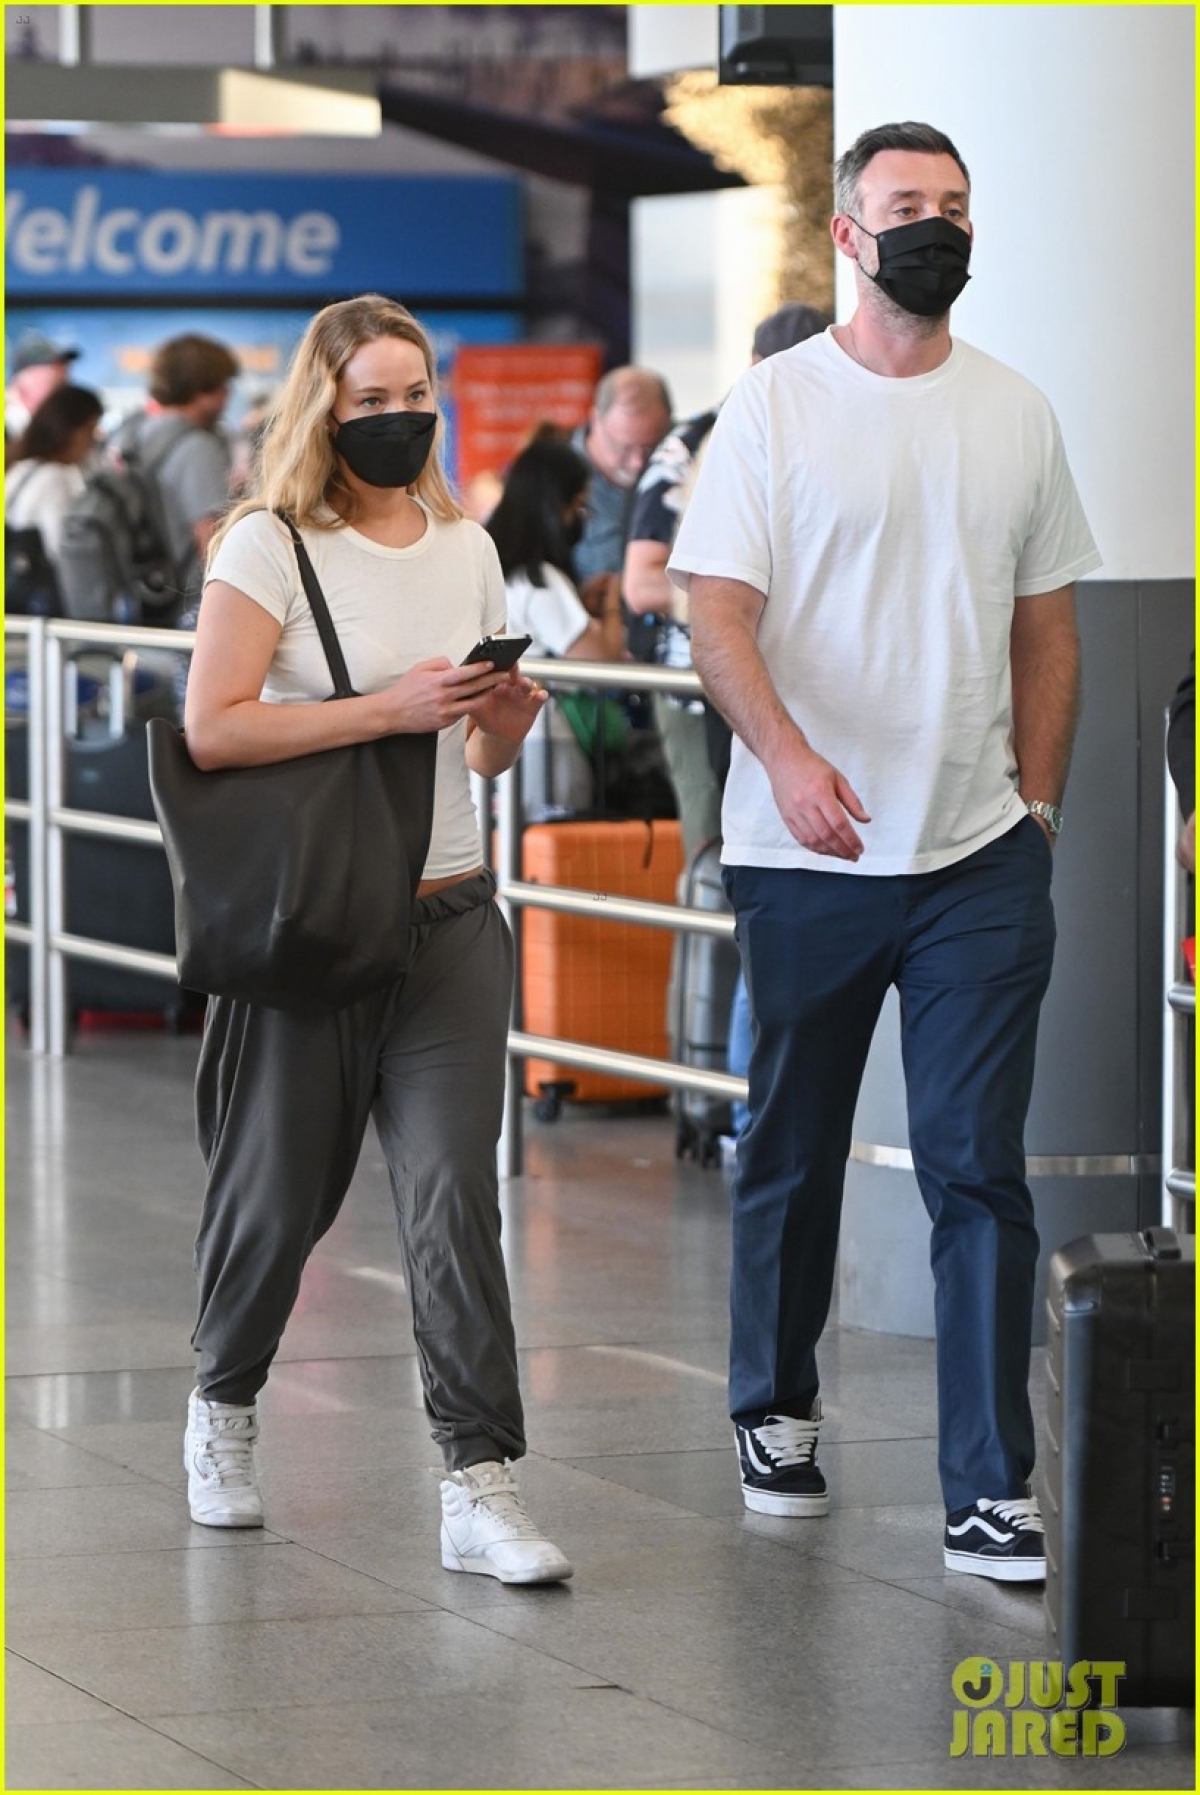 Vợ chồng Jennifer Lawrence lên đồ đồng điệu tái xuất ở sân bay - Ảnh 1.